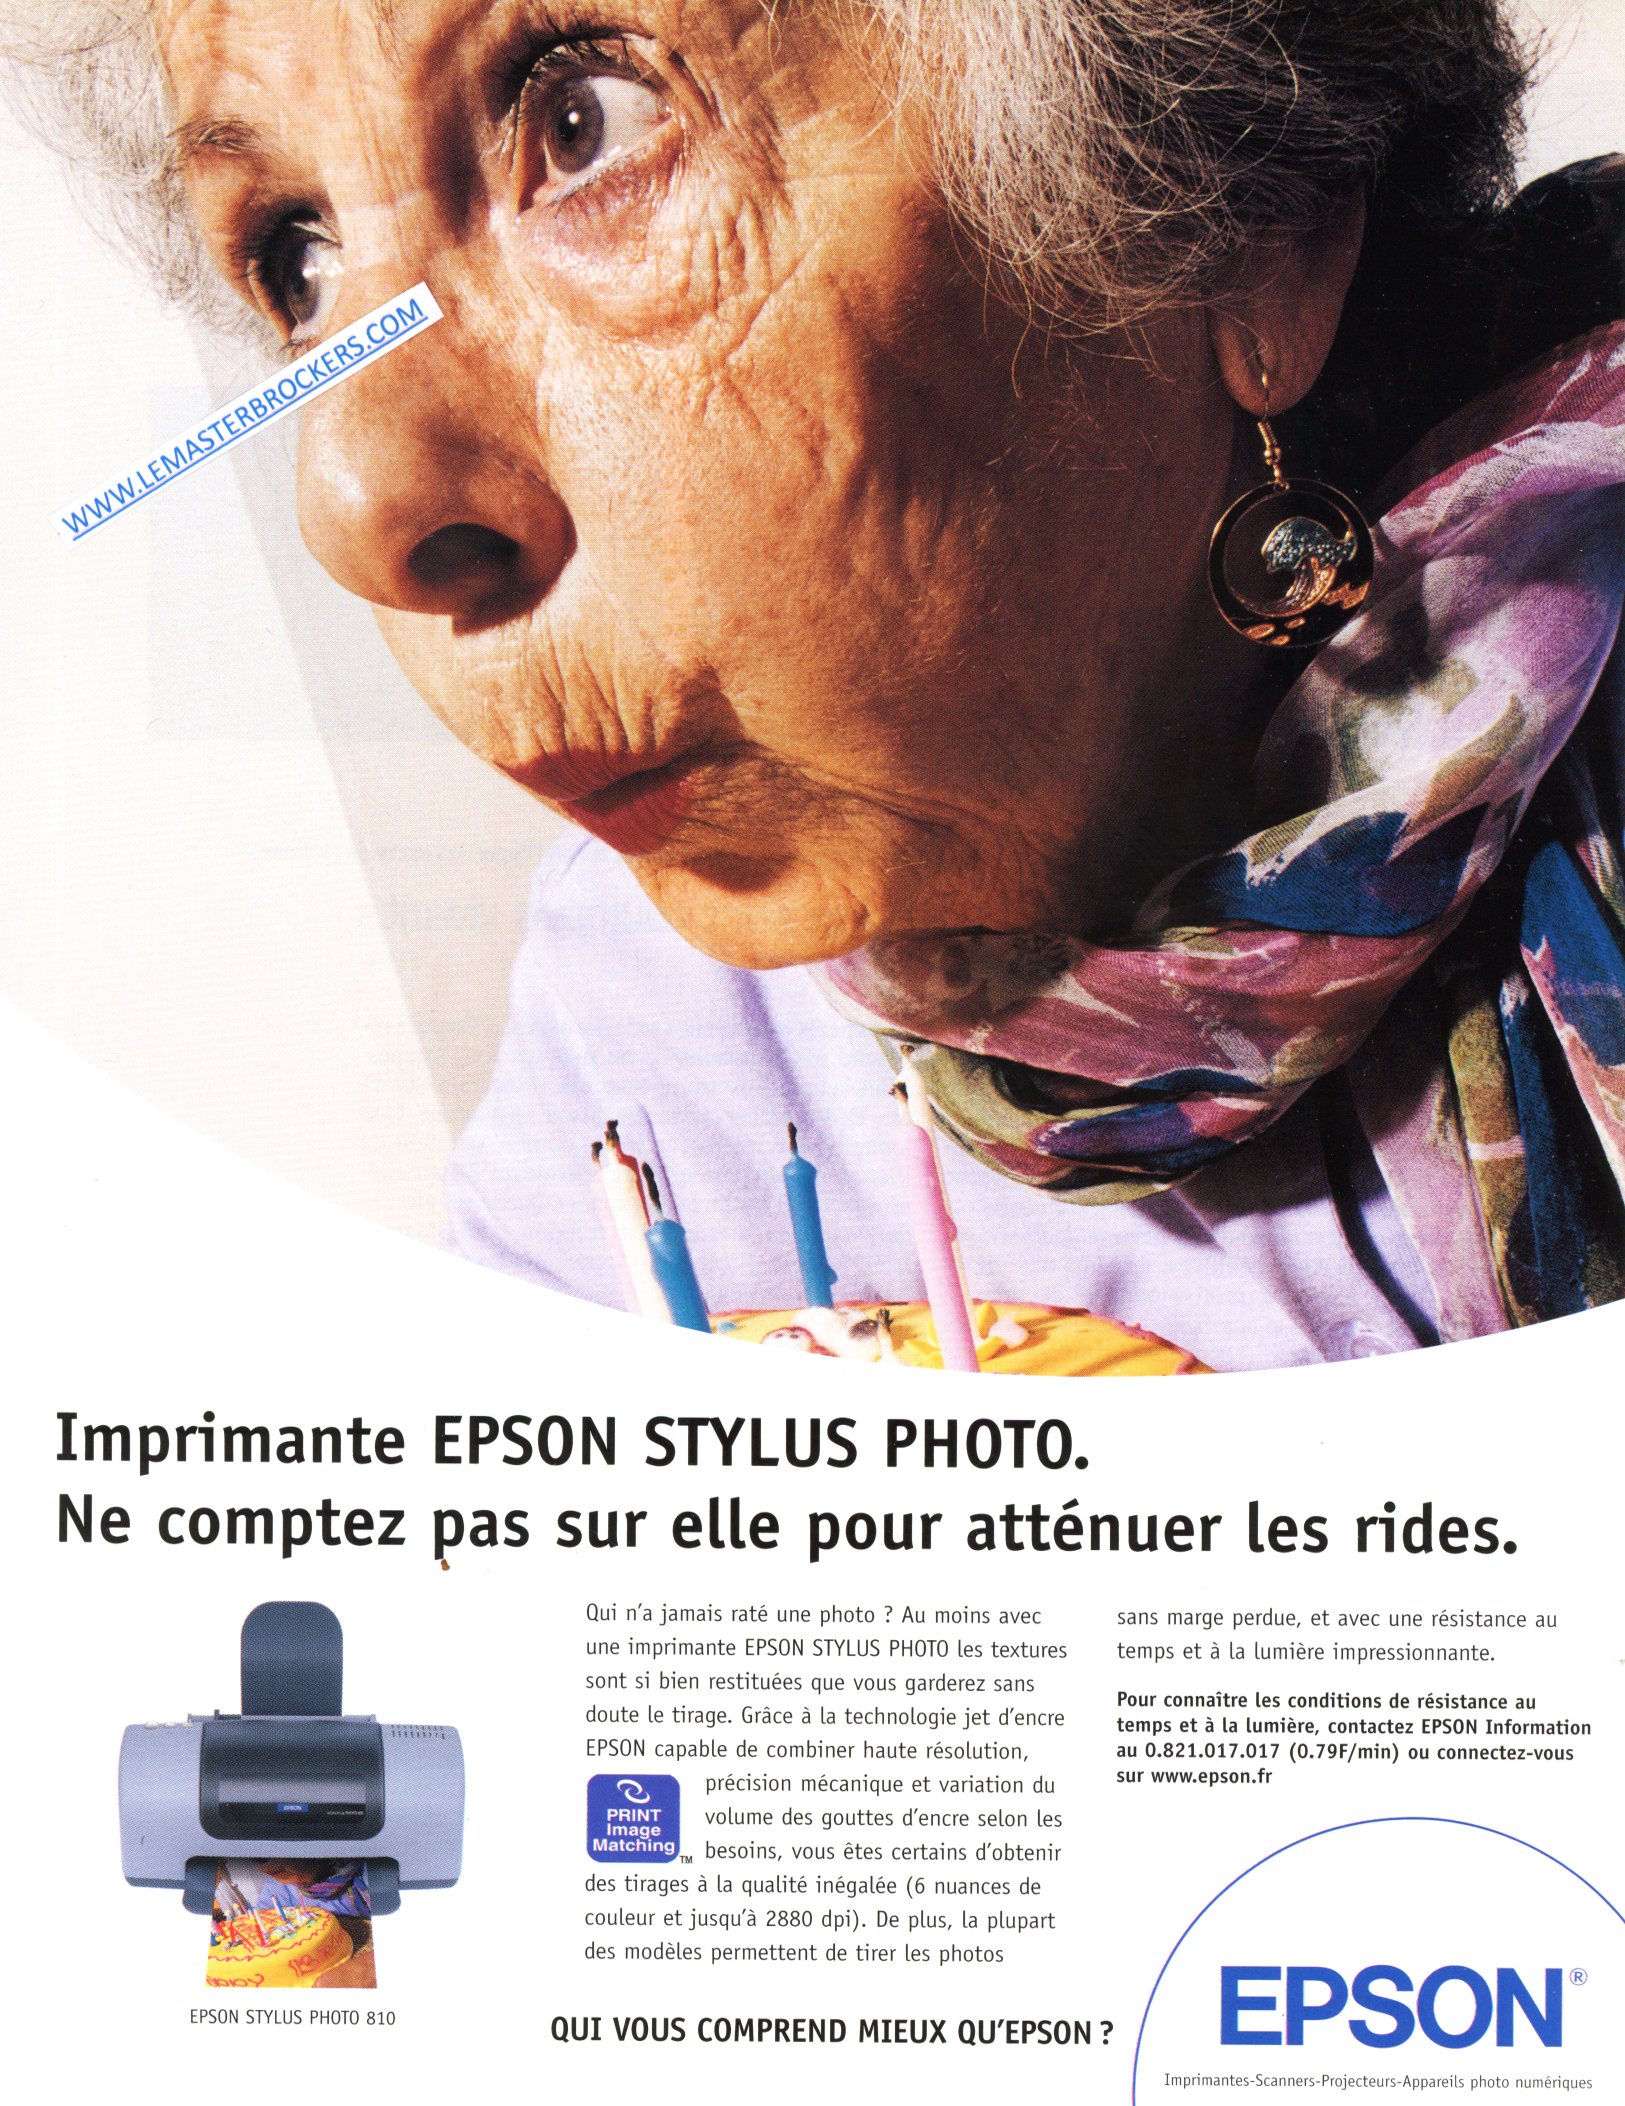 PUBLICITÉ ADVERTISING 2001 EPSON STYLUS PHOTO LEMASTERBROCKERS